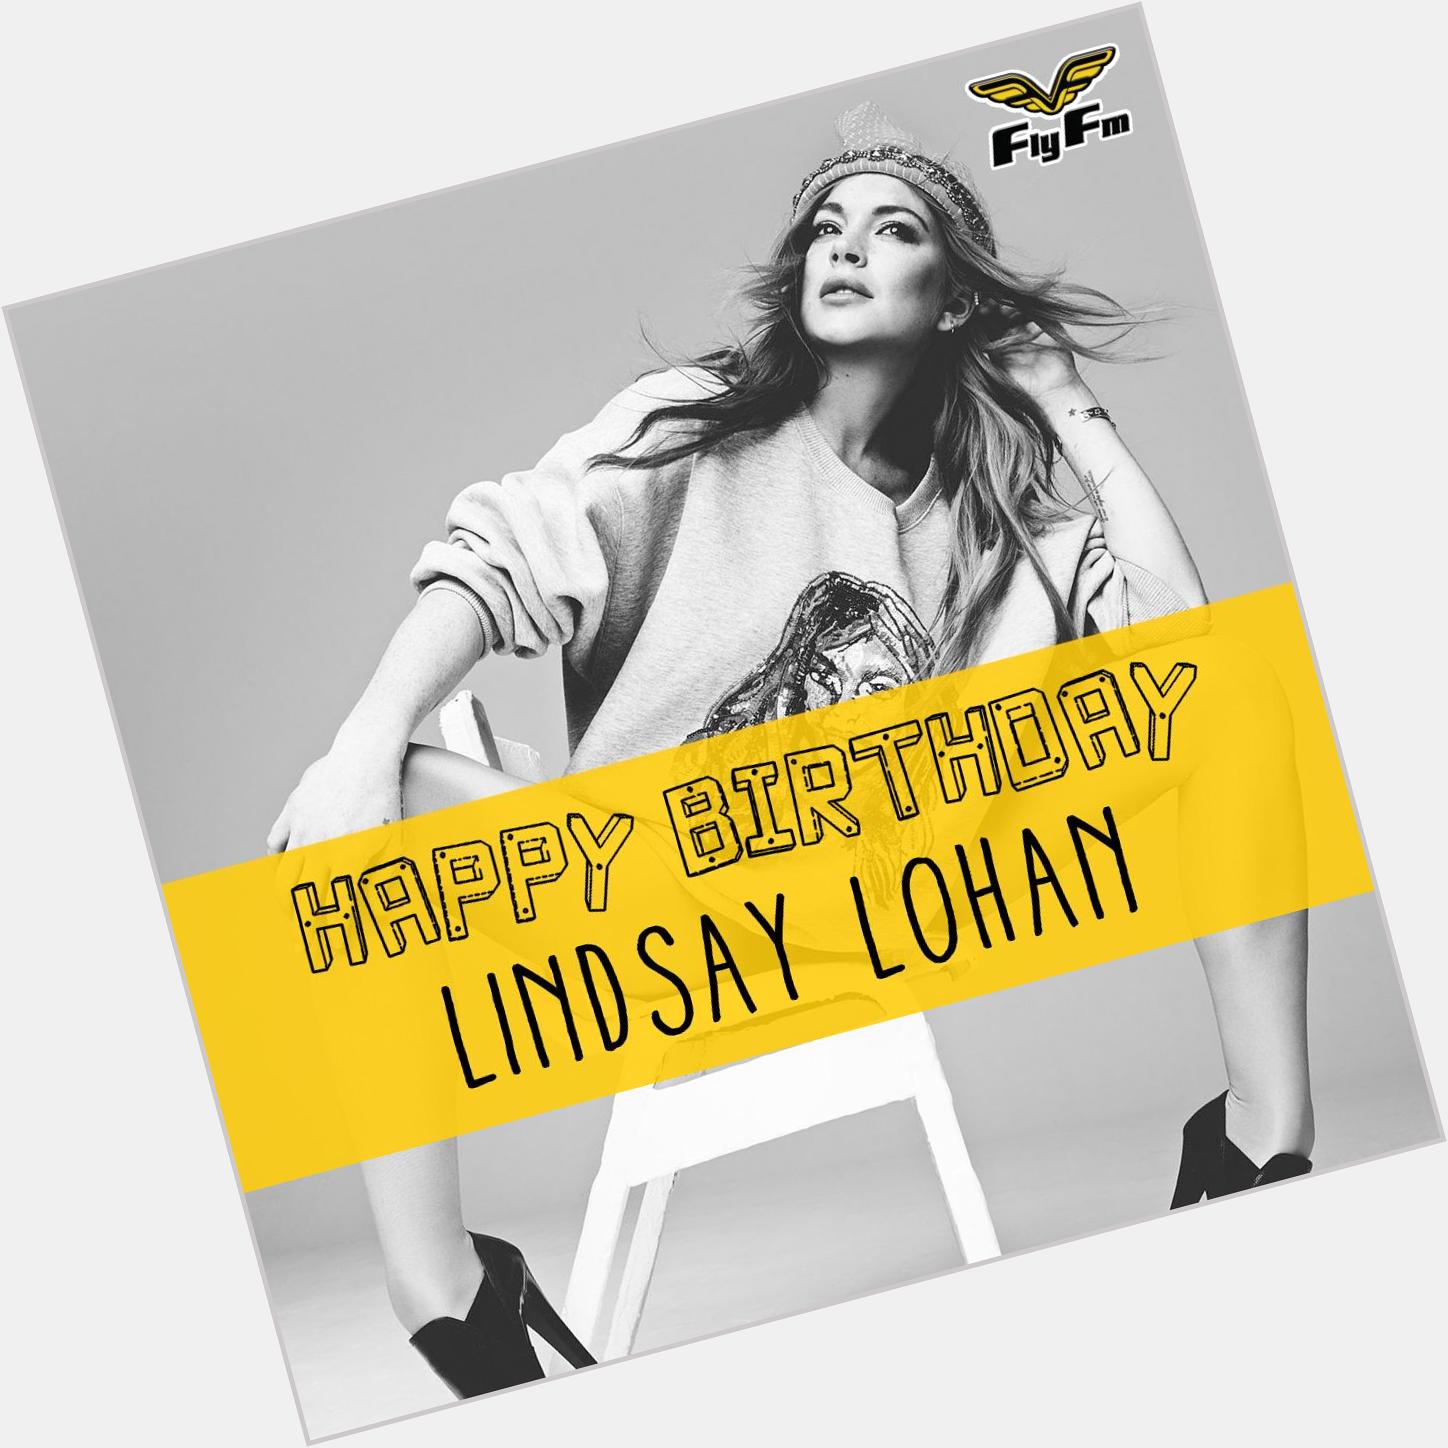 Happy Happy Birthday Lindsay Lohan ! She turns 29 today! :D 